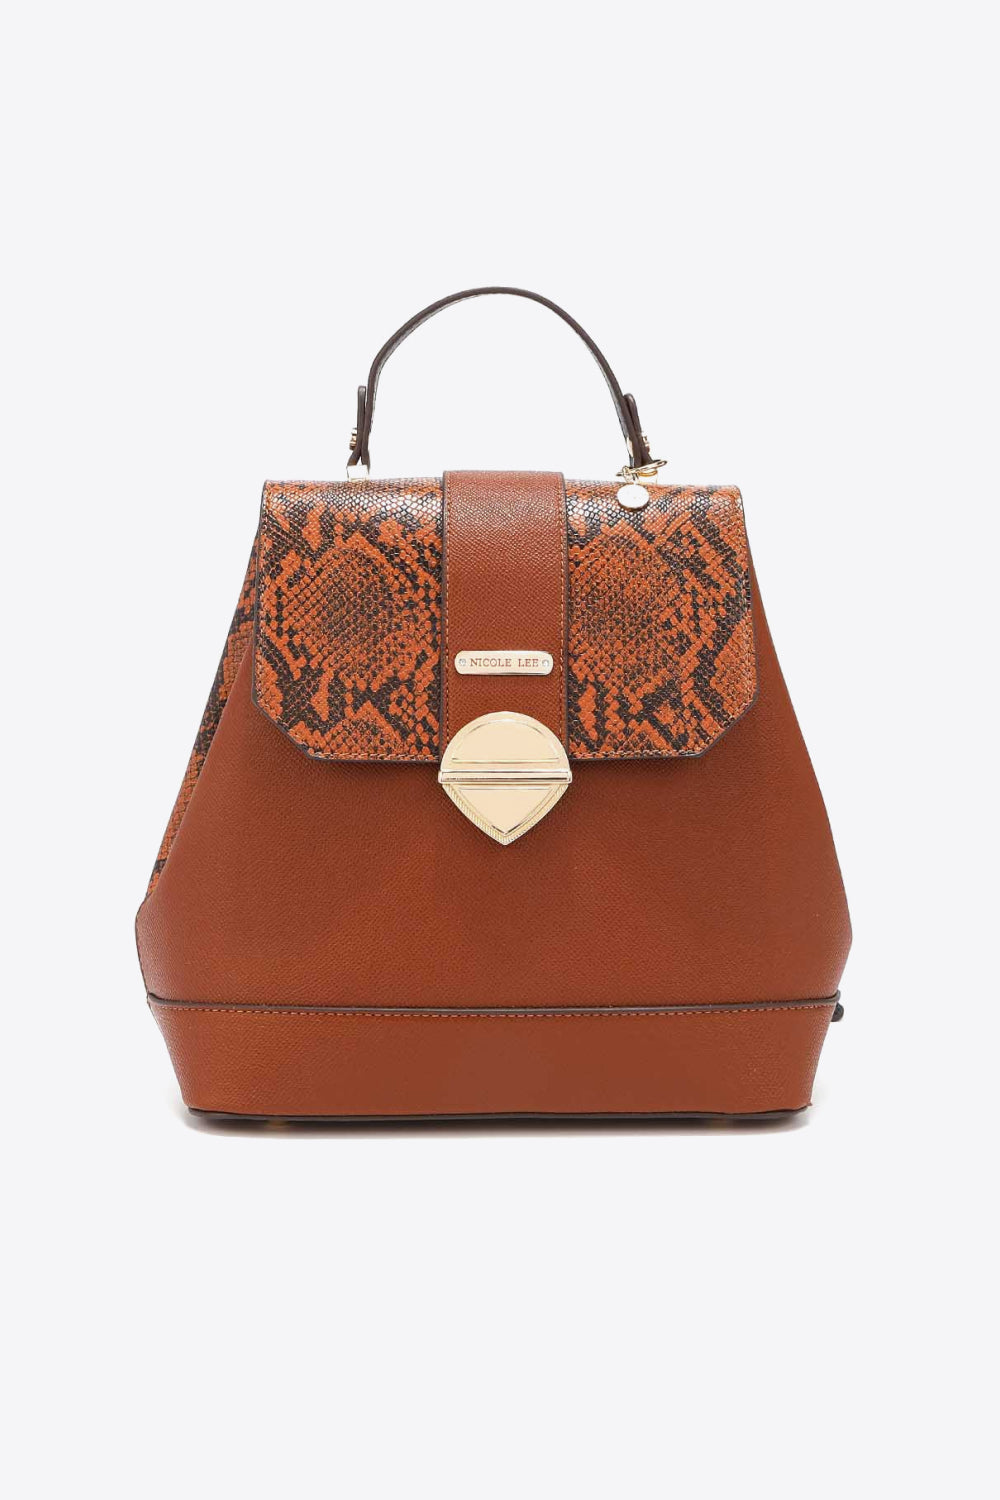 Sienna Nicole Lee USA Python 3-Piece Bag Set Handbags